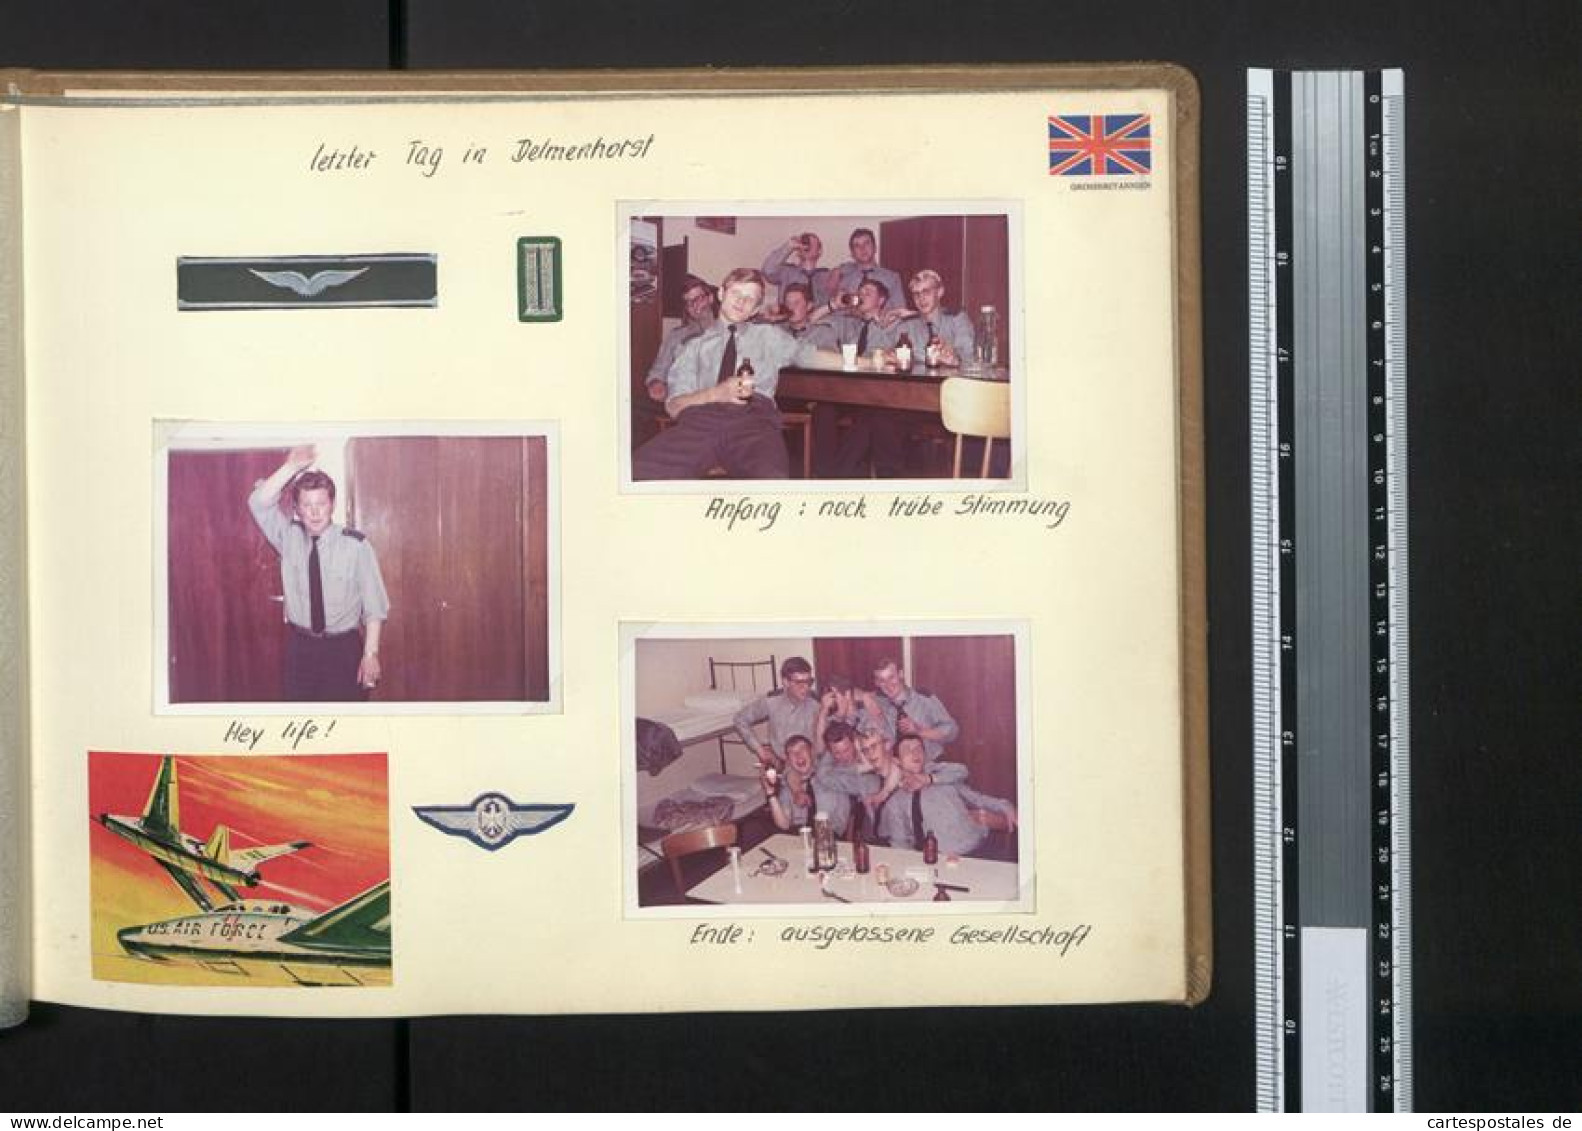 Fotoalbum mit 67 Fotografien Bundeswehr, Grundausbildung 1969, Panzer, NATO, Jugendlager, Uniform 